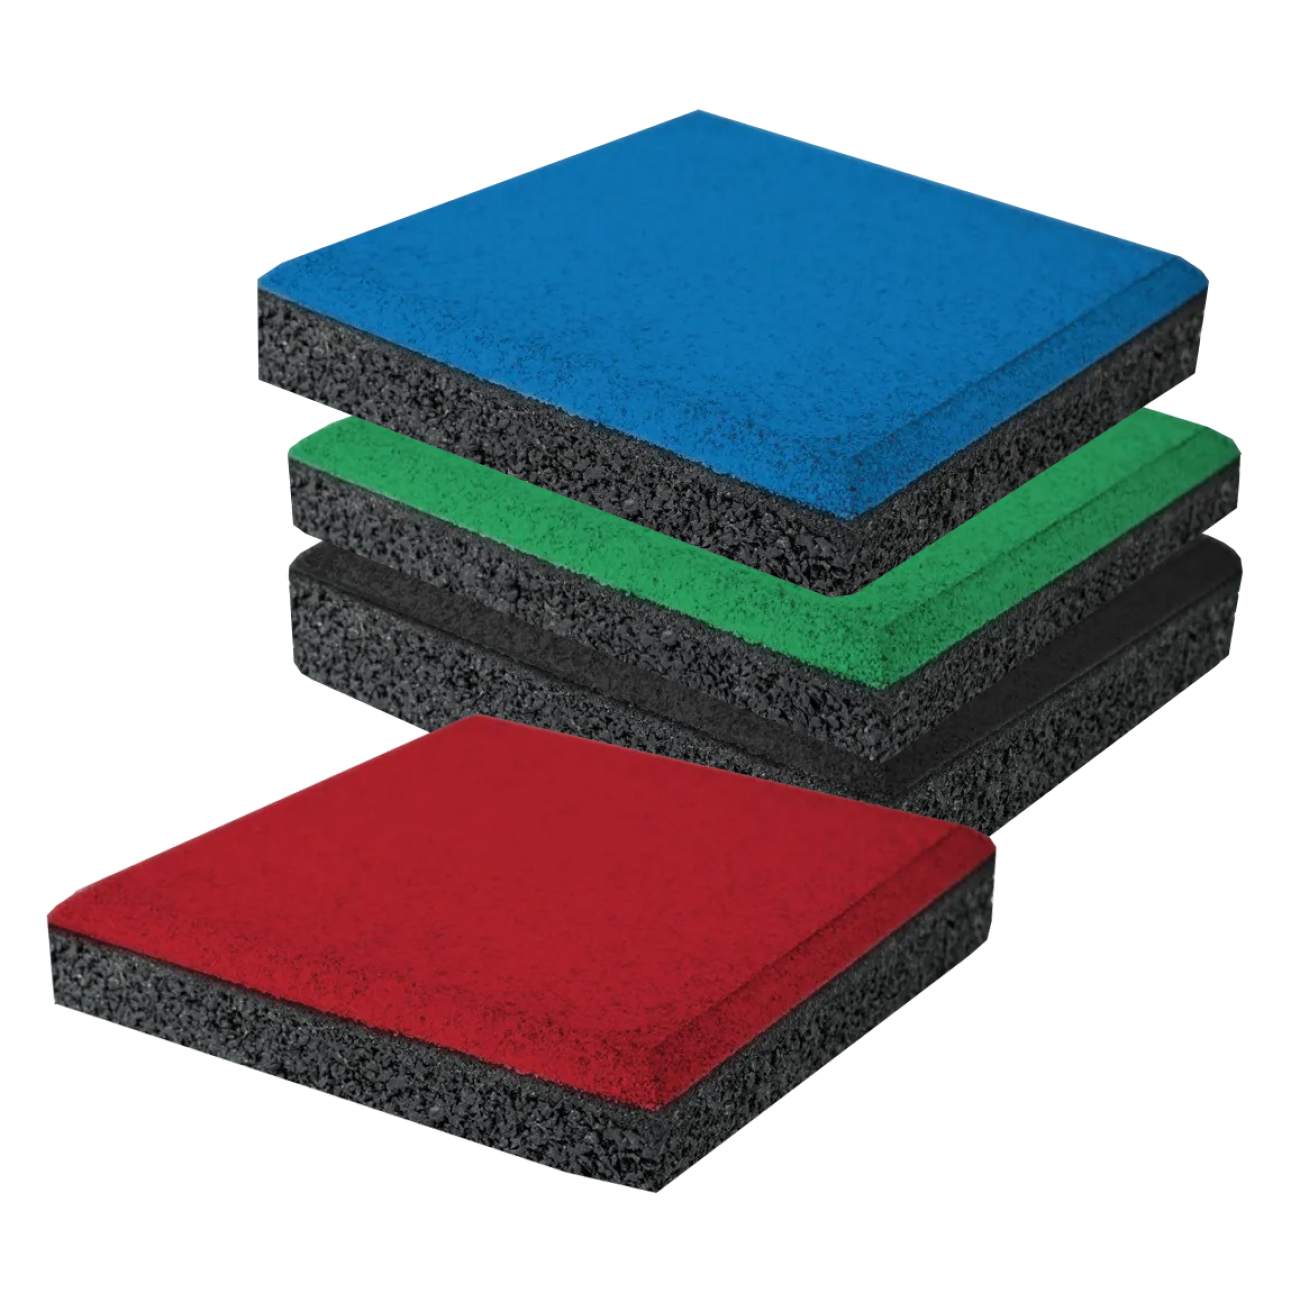 Piso amortiguante o losa de caucho fabricado en hule EPDM reciclado, aglutinado con resina de poliuretano de alta calidad. Modelo: gra001-pasto-artificial-deportivo